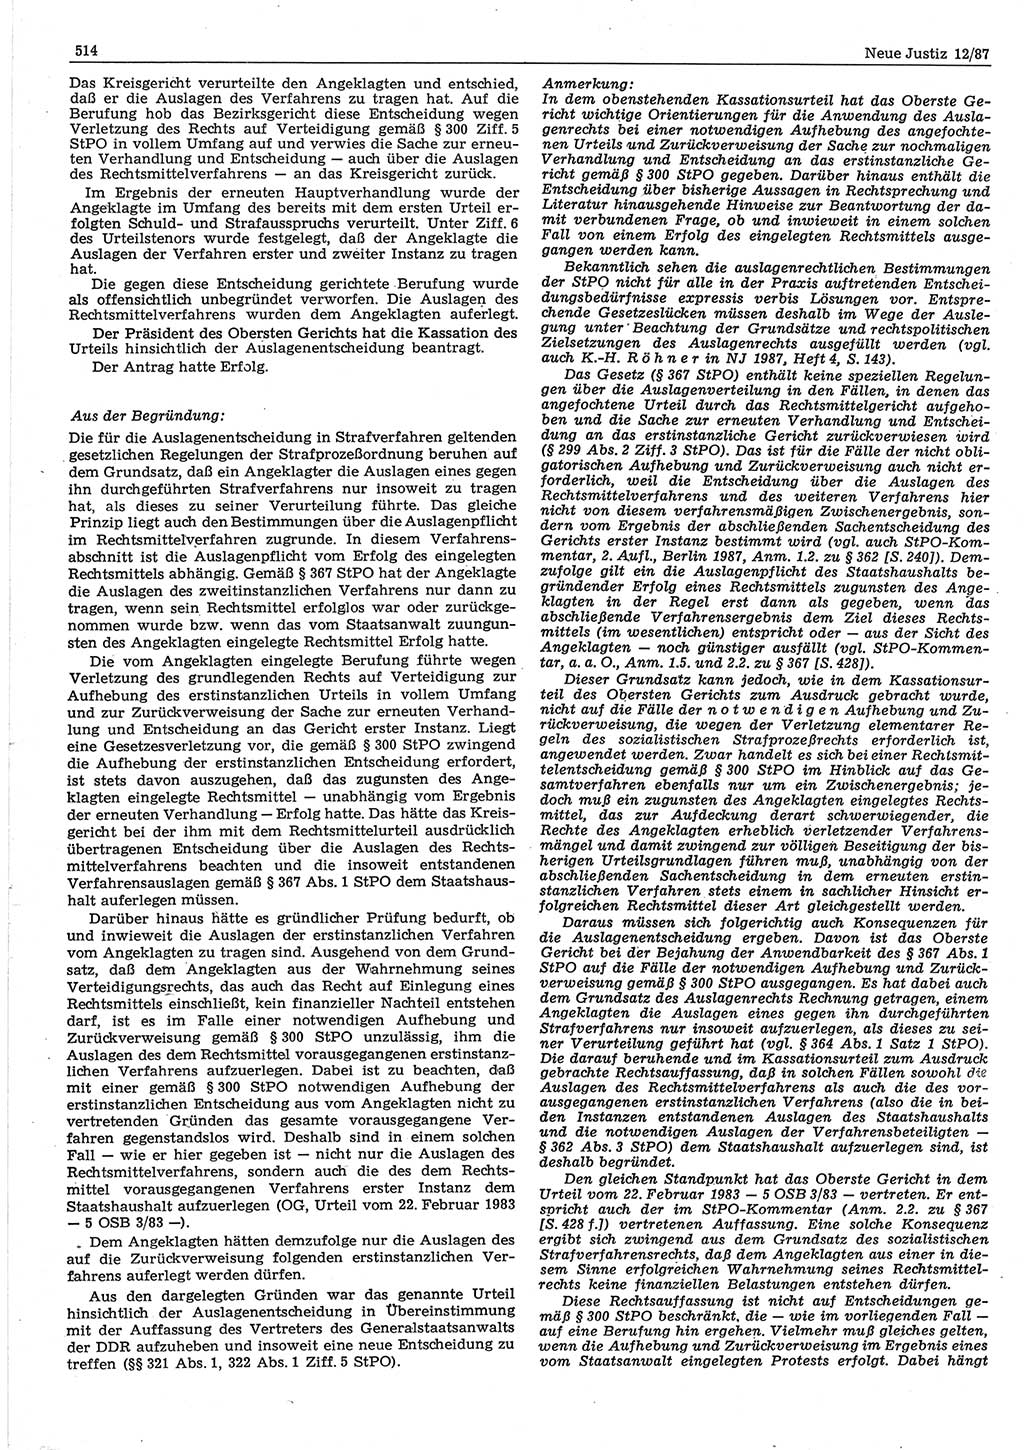 Neue Justiz (NJ), Zeitschrift für sozialistisches Recht und Gesetzlichkeit [Deutsche Demokratische Republik (DDR)], 41. Jahrgang 1987, Seite 514 (NJ DDR 1987, S. 514)